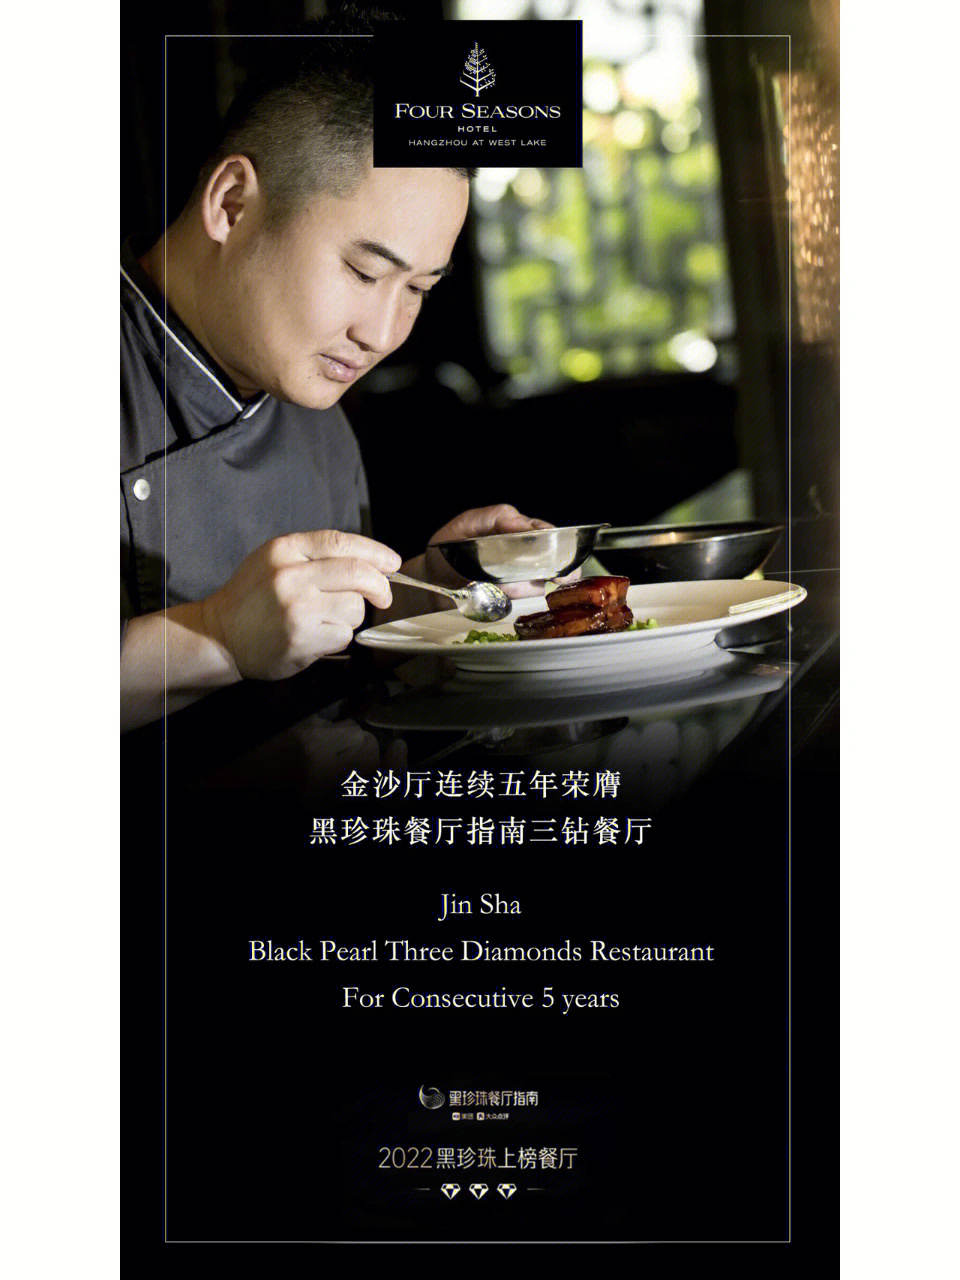 黑珍珠三钻餐厅图片